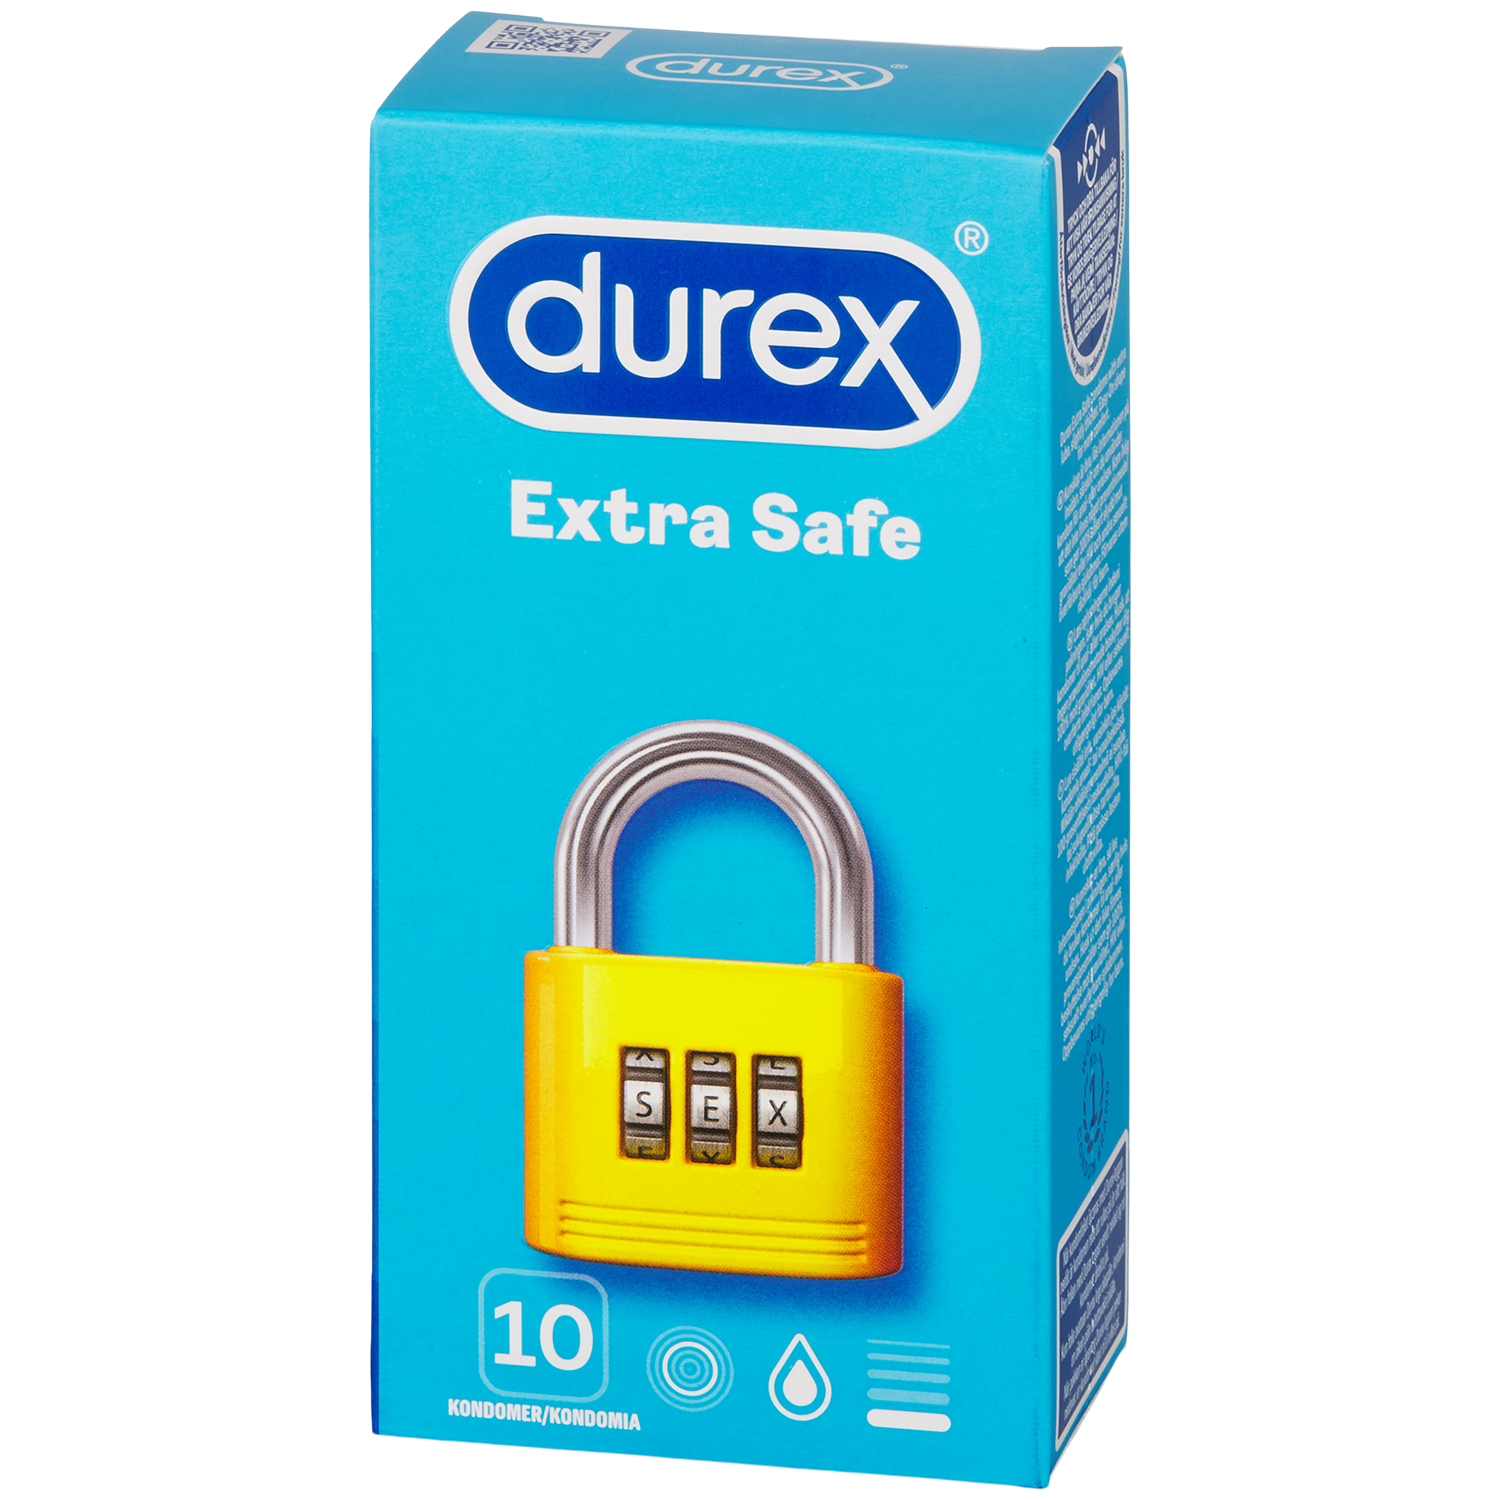 Durex Extra Safe Kondomer 10 stk     - Klar thumbnail